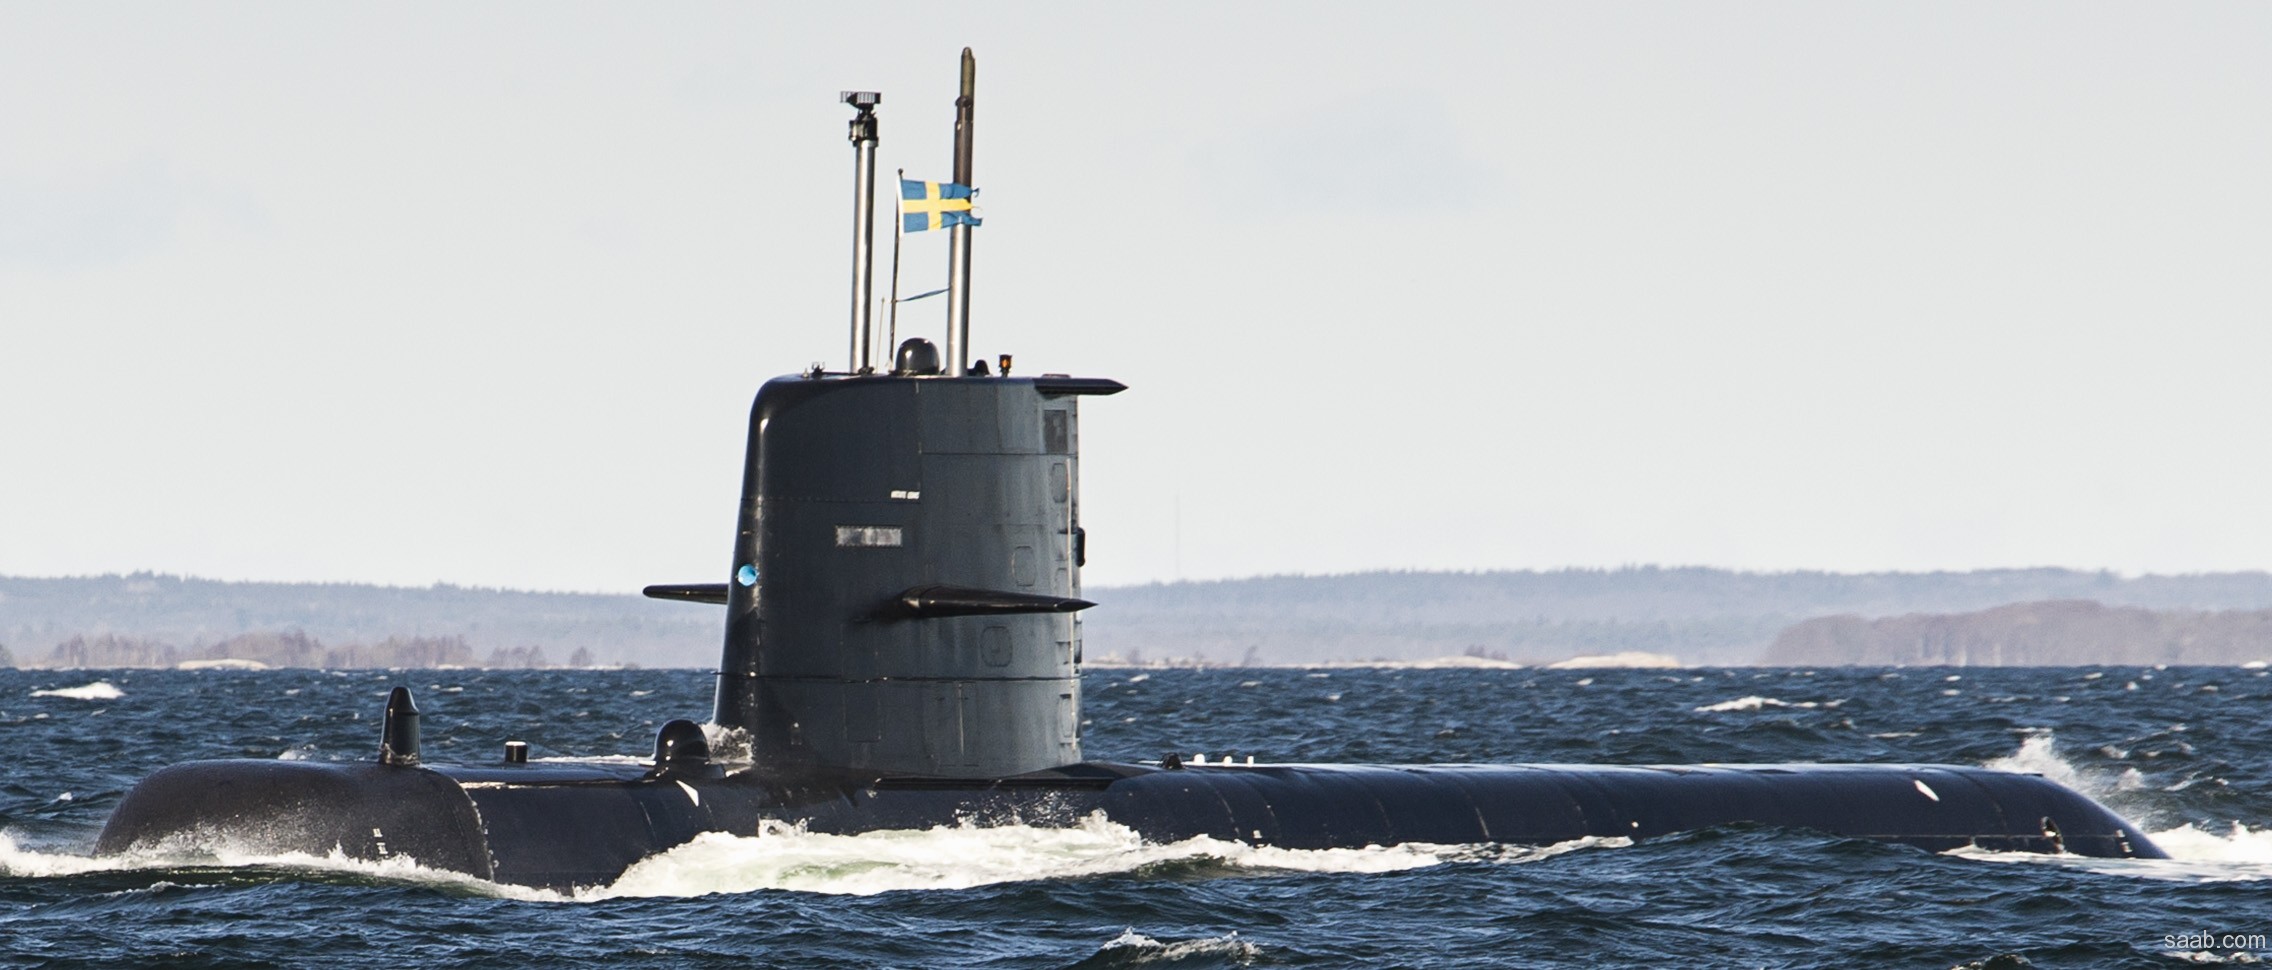 hswms hms halland hnd gotland class submarine ssk swedish navy svenska marinen försvarsmakten kockums 07